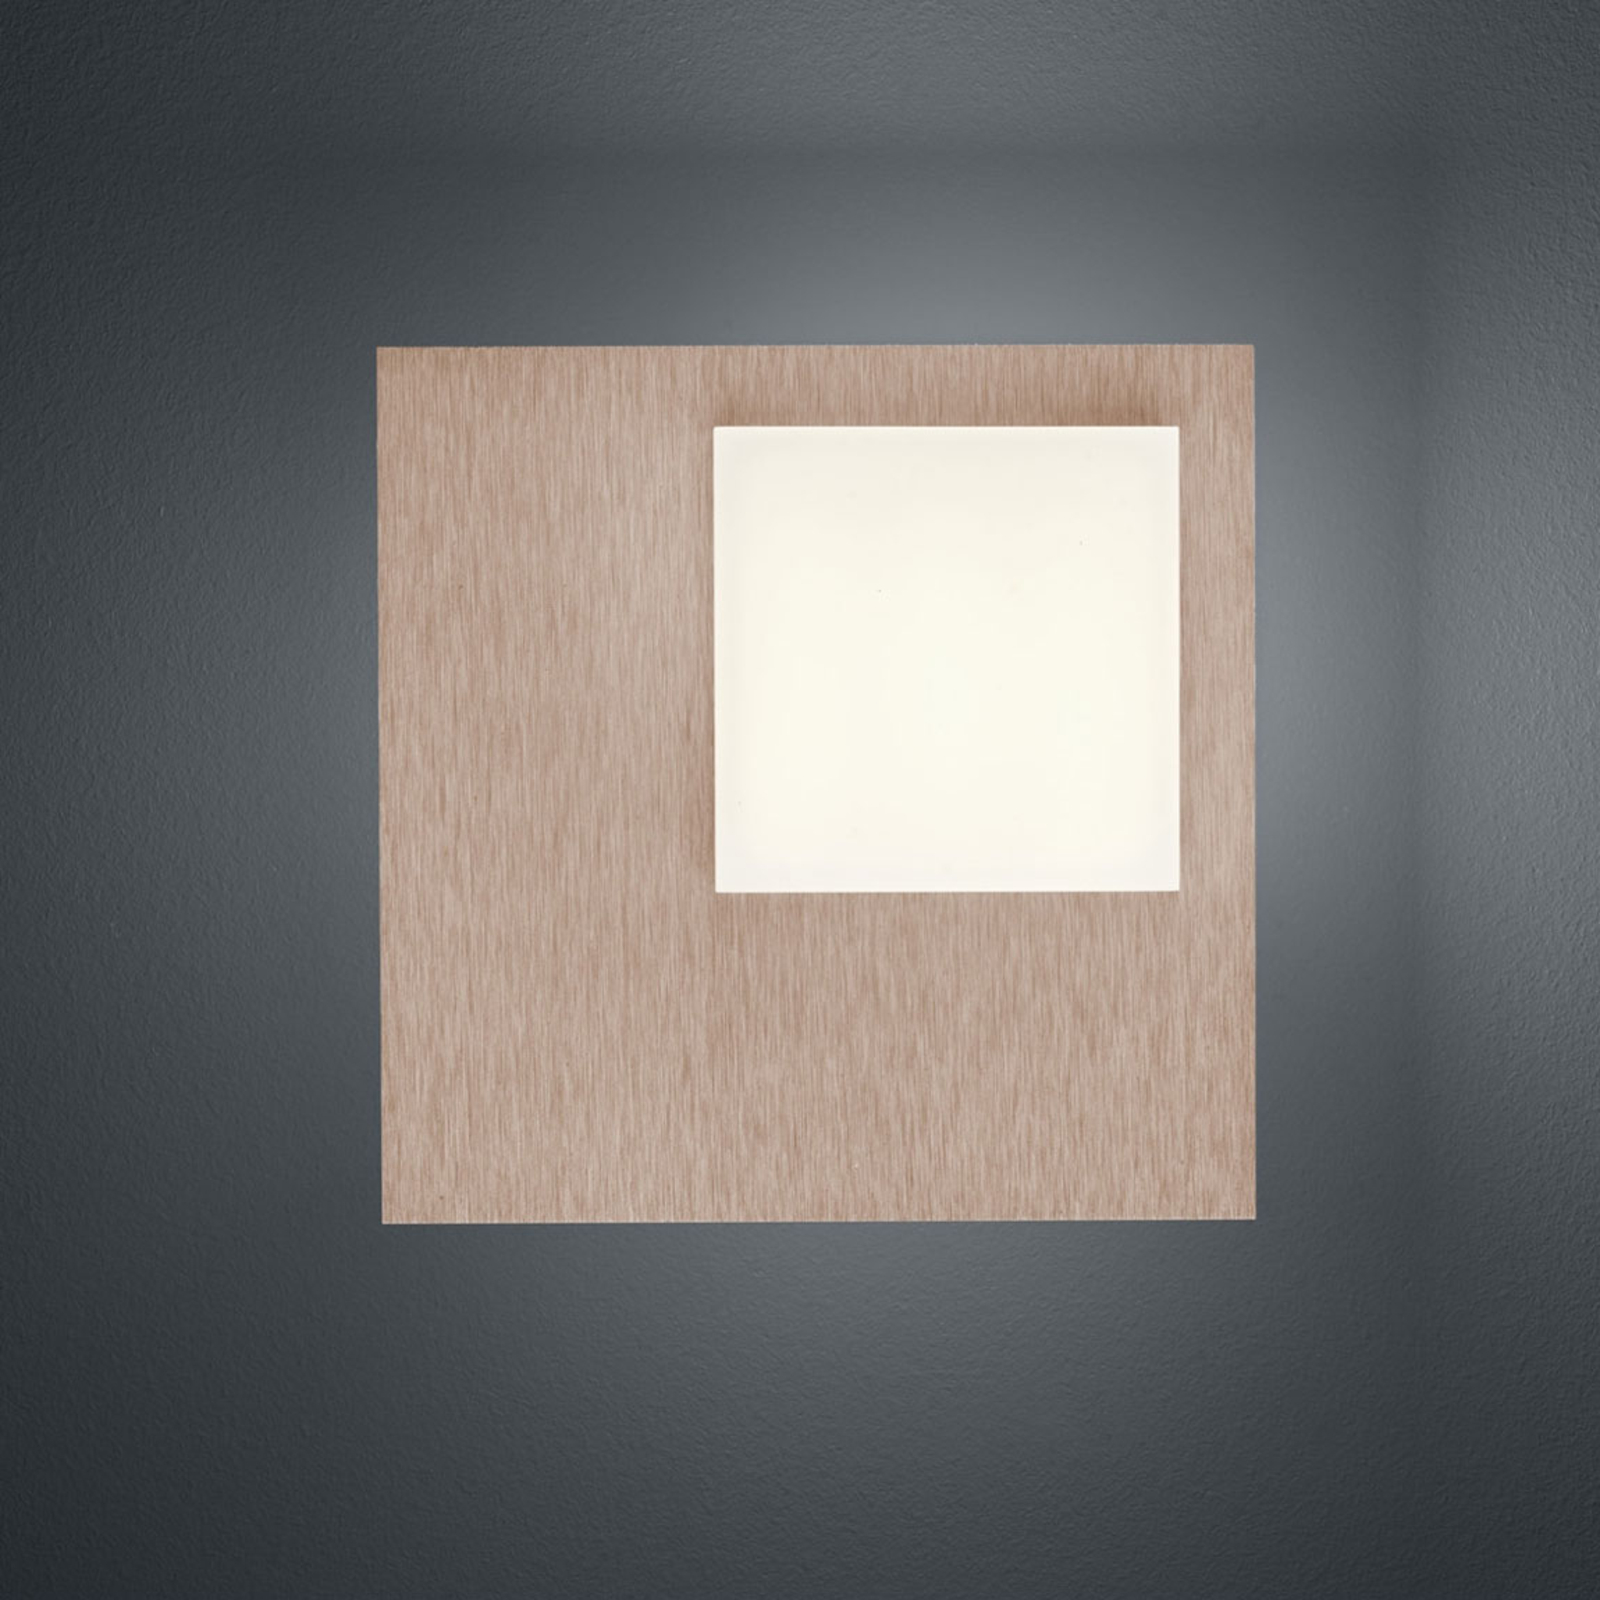 BANKAMP Cube lampa sufitowa LED 8 W, różowy-złota